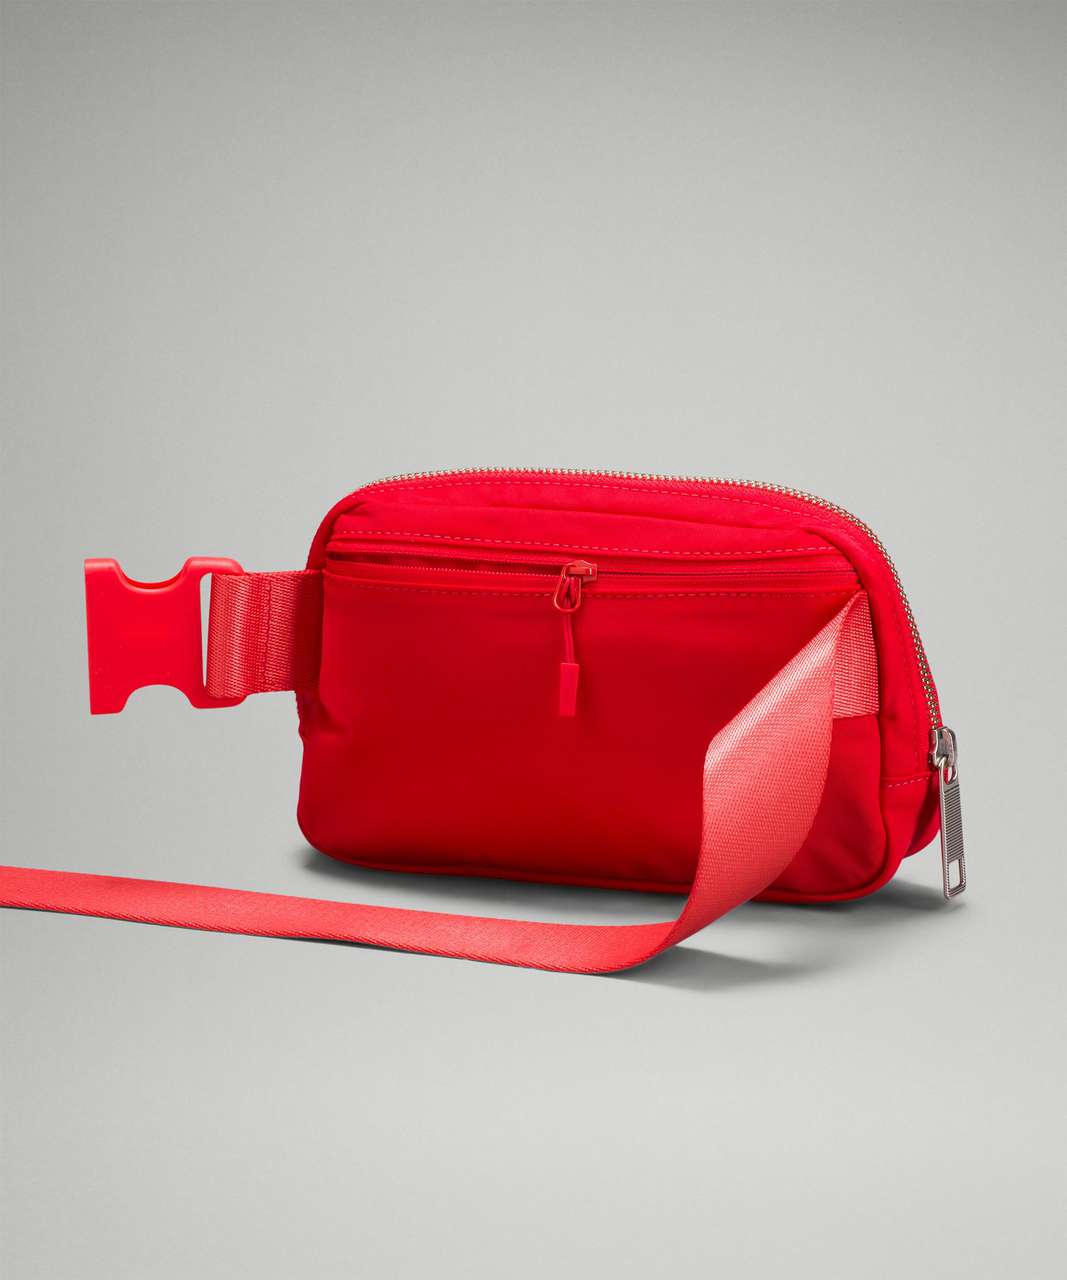 Lululemon Everywhere Belt Bag - Love Red